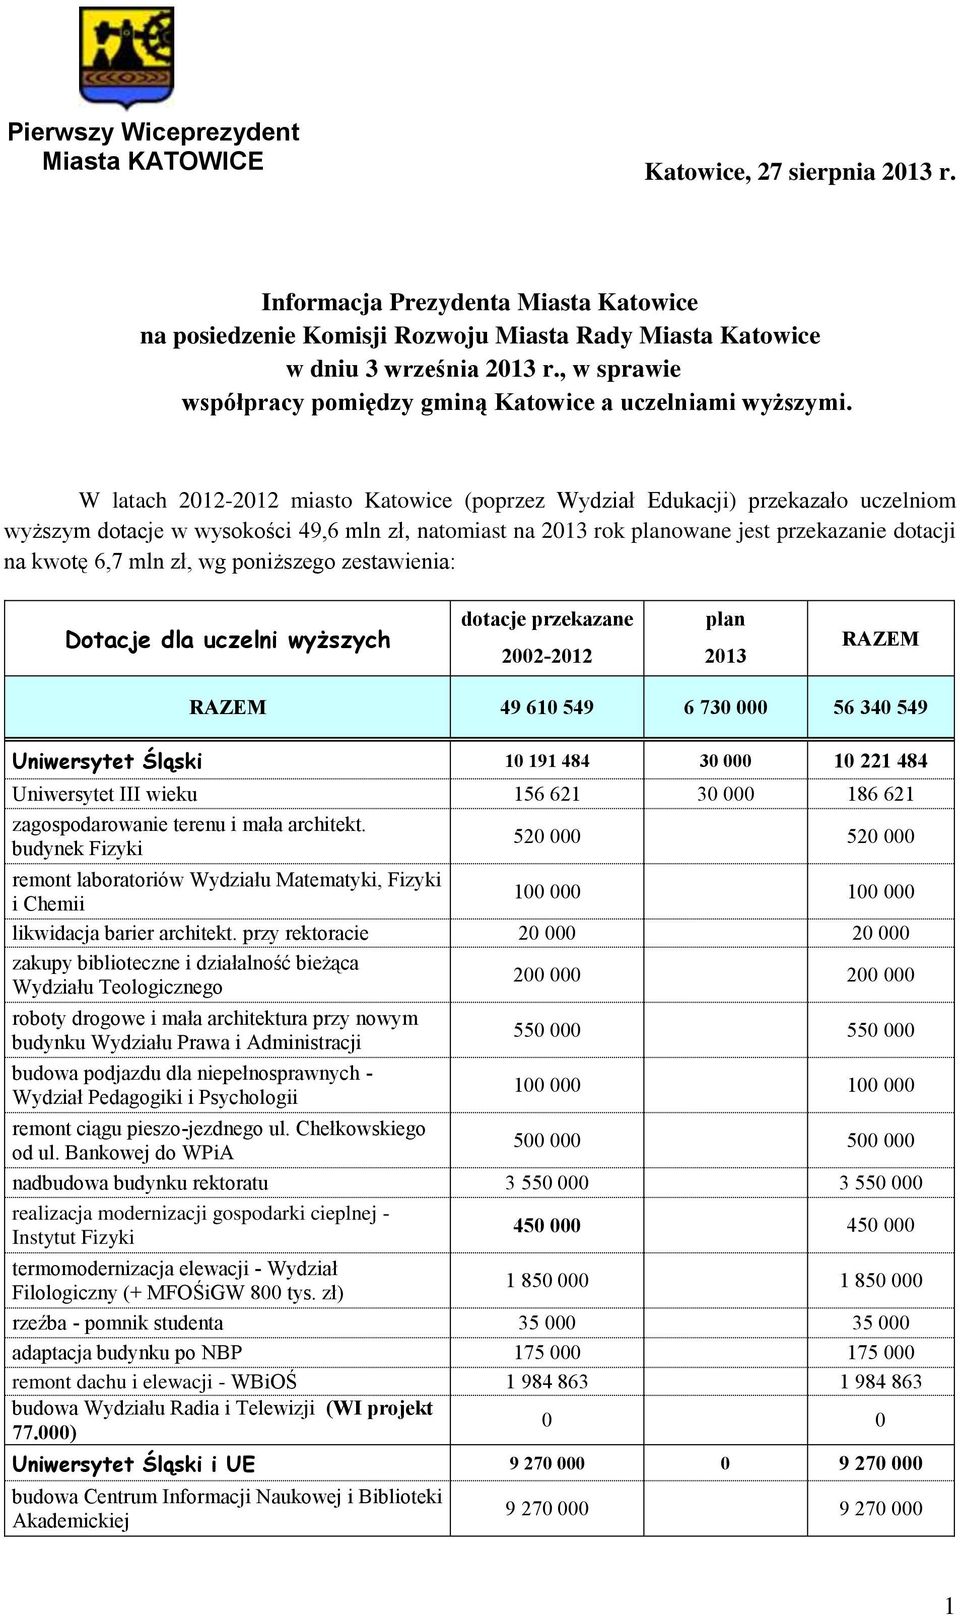 W latach 2012-2012 miasto Katowice (poprzez Wydział Edukacji) przekazało uczelniom wyższym dotacje w wysokości 49,6 mln zł, natomiast na 2013 rok planowane jest przekazanie dotacji na kwotę 6,7 mln